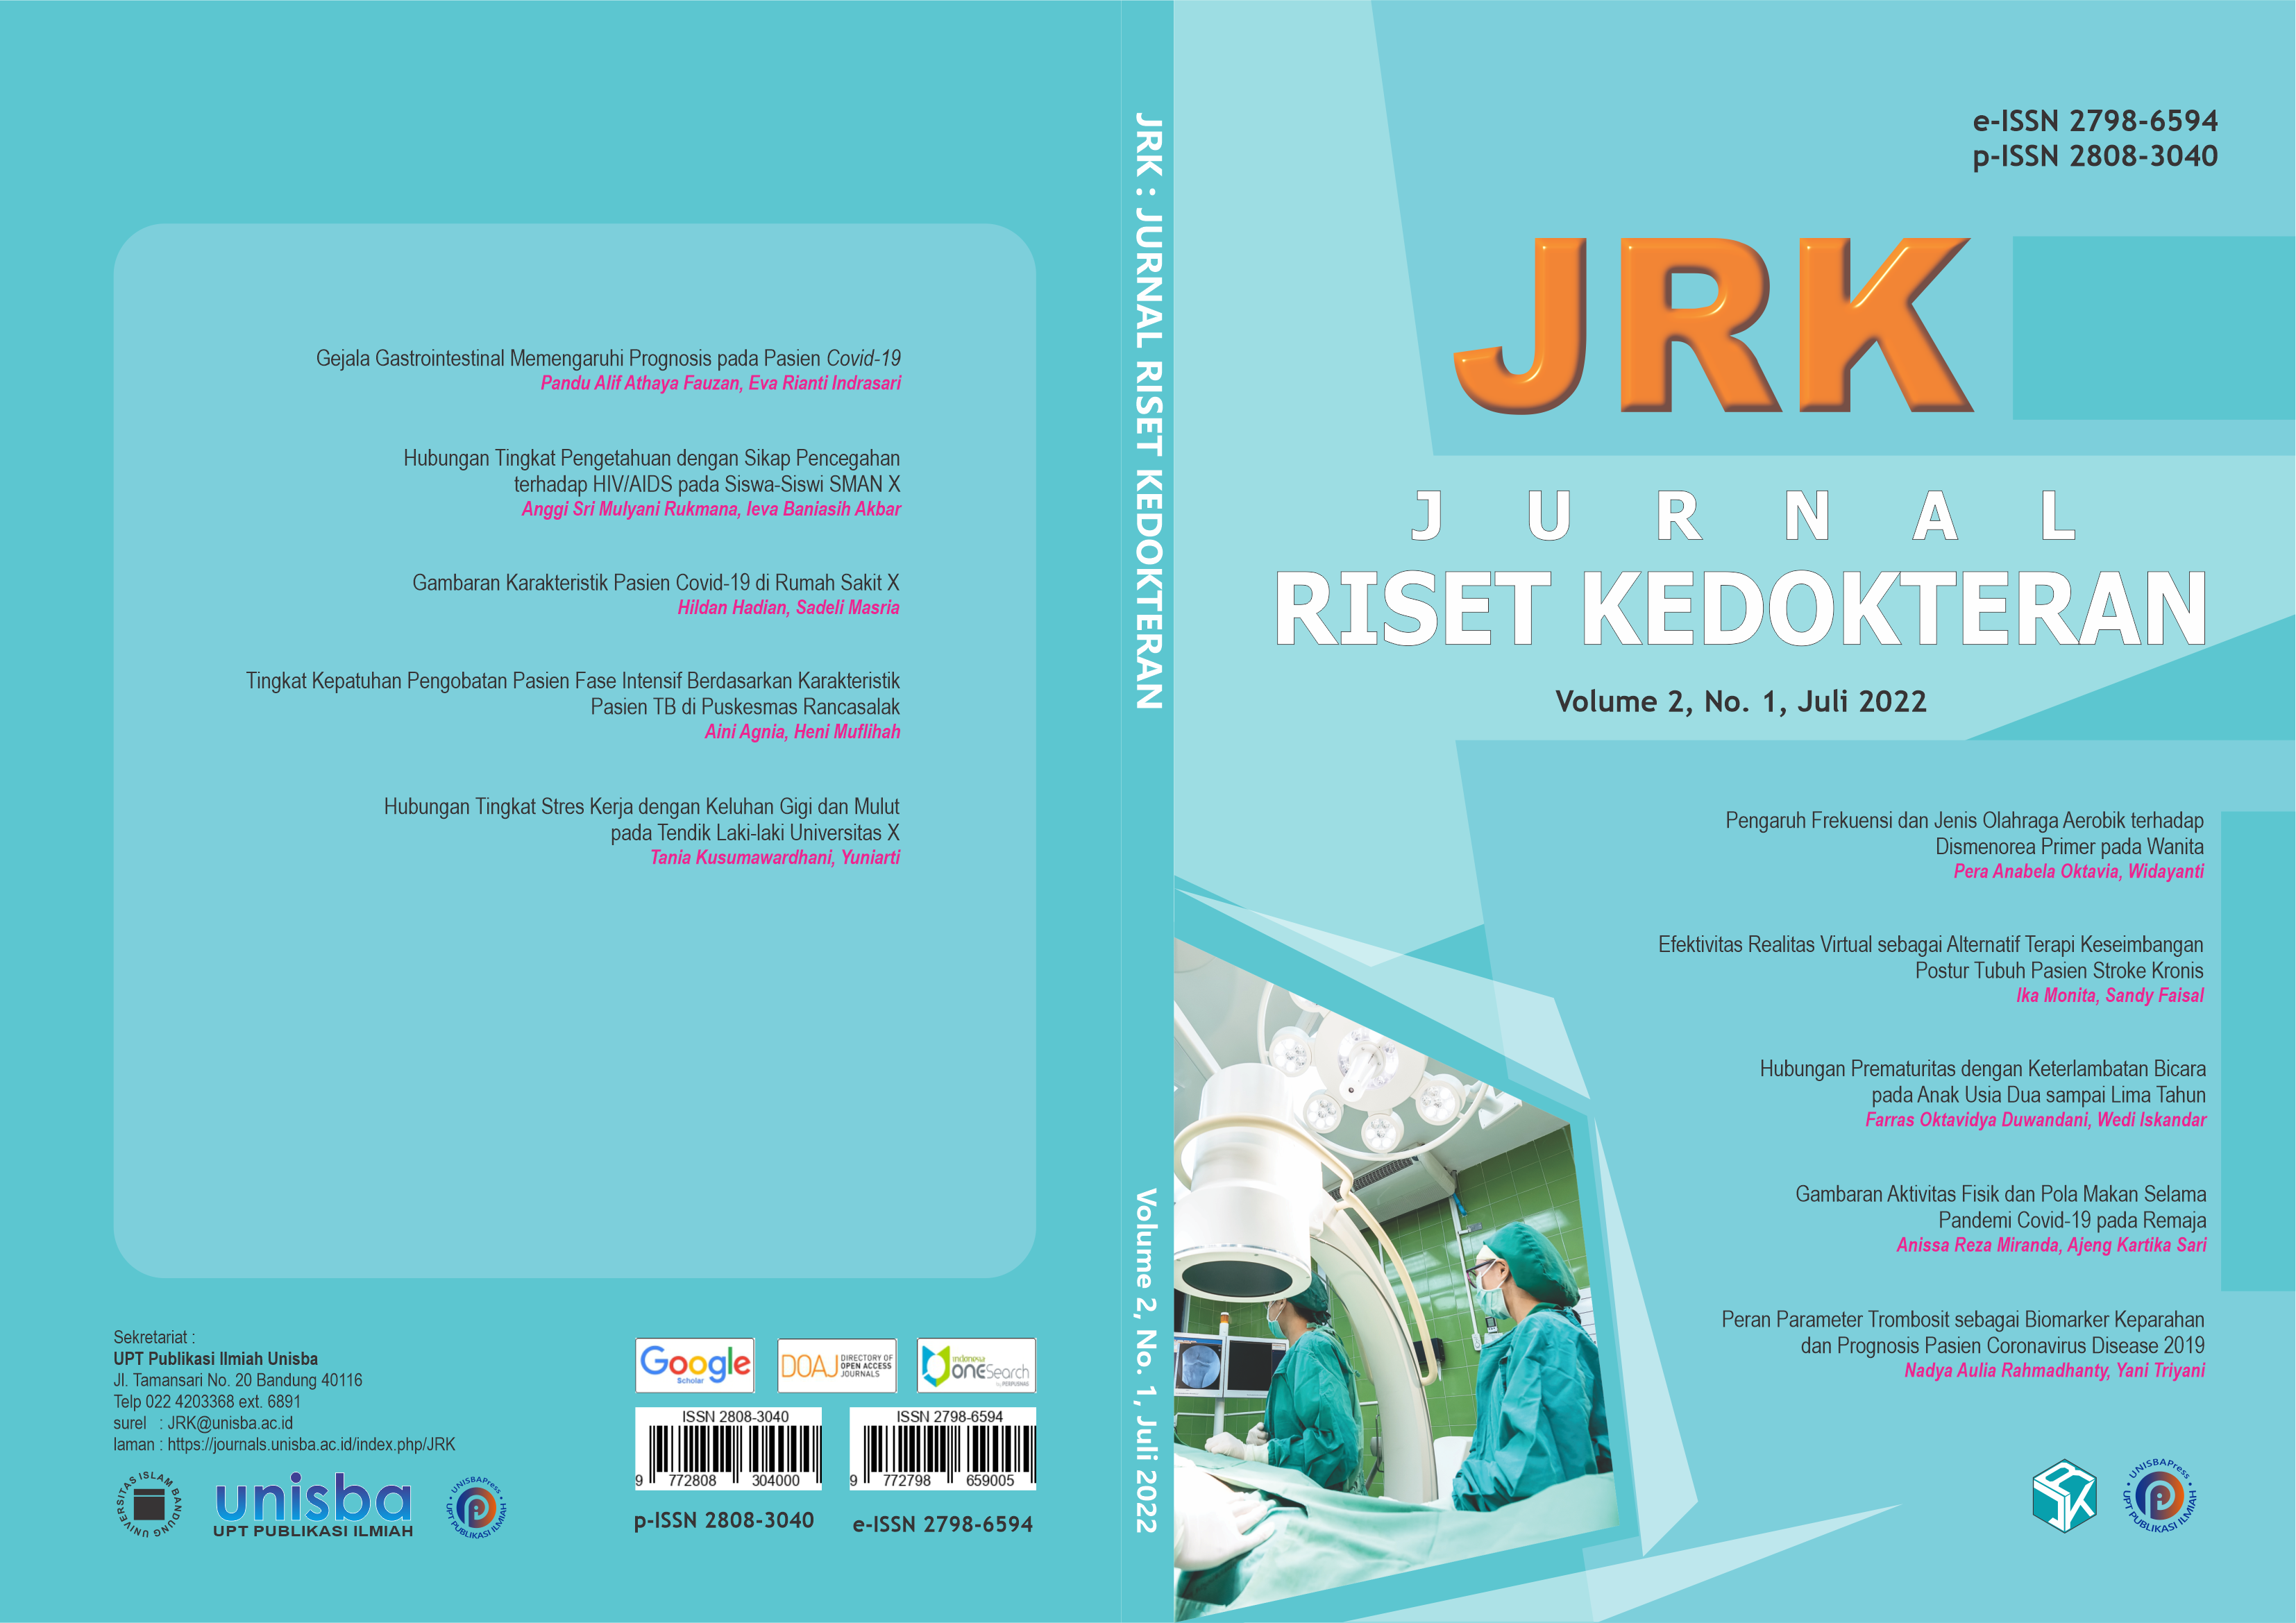 					View Volume 2, No.1, Juli 2022, Jurnal Riset Kedokteran (JRK)
				